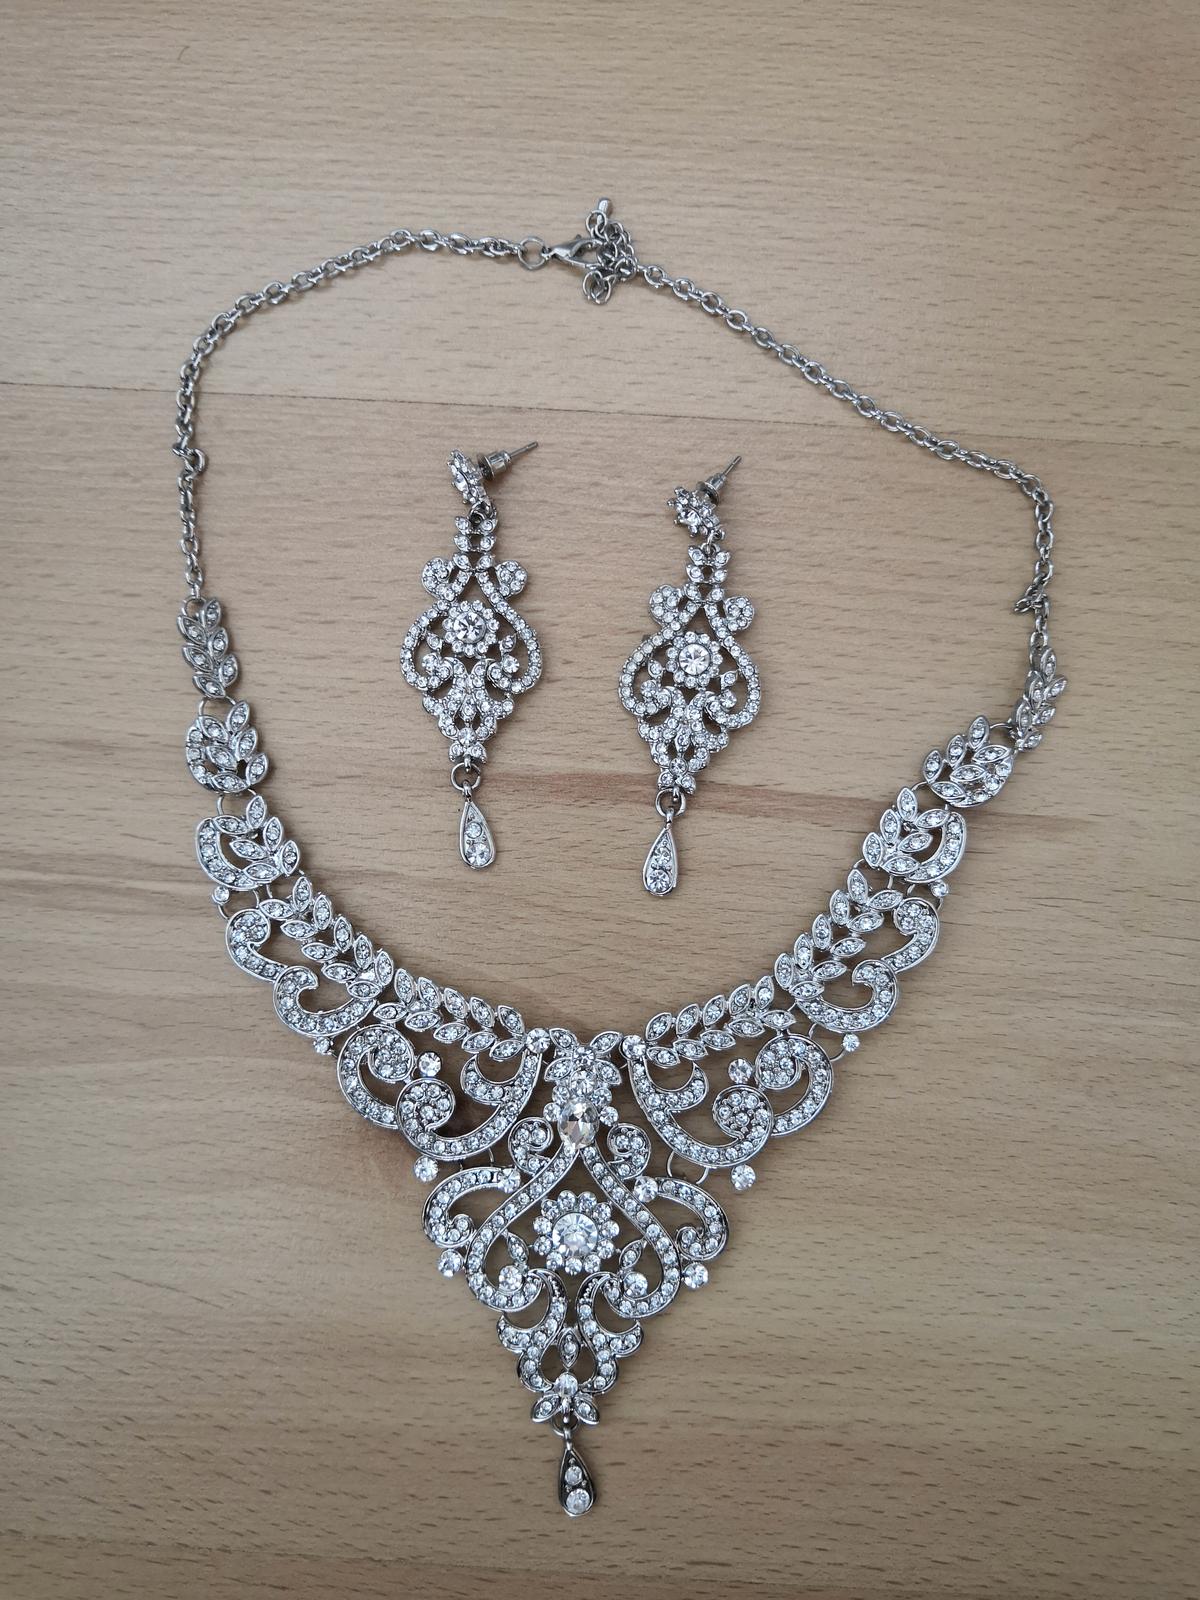 Sada šperků - náušnice, náhrdelník - Obrázek č. 2